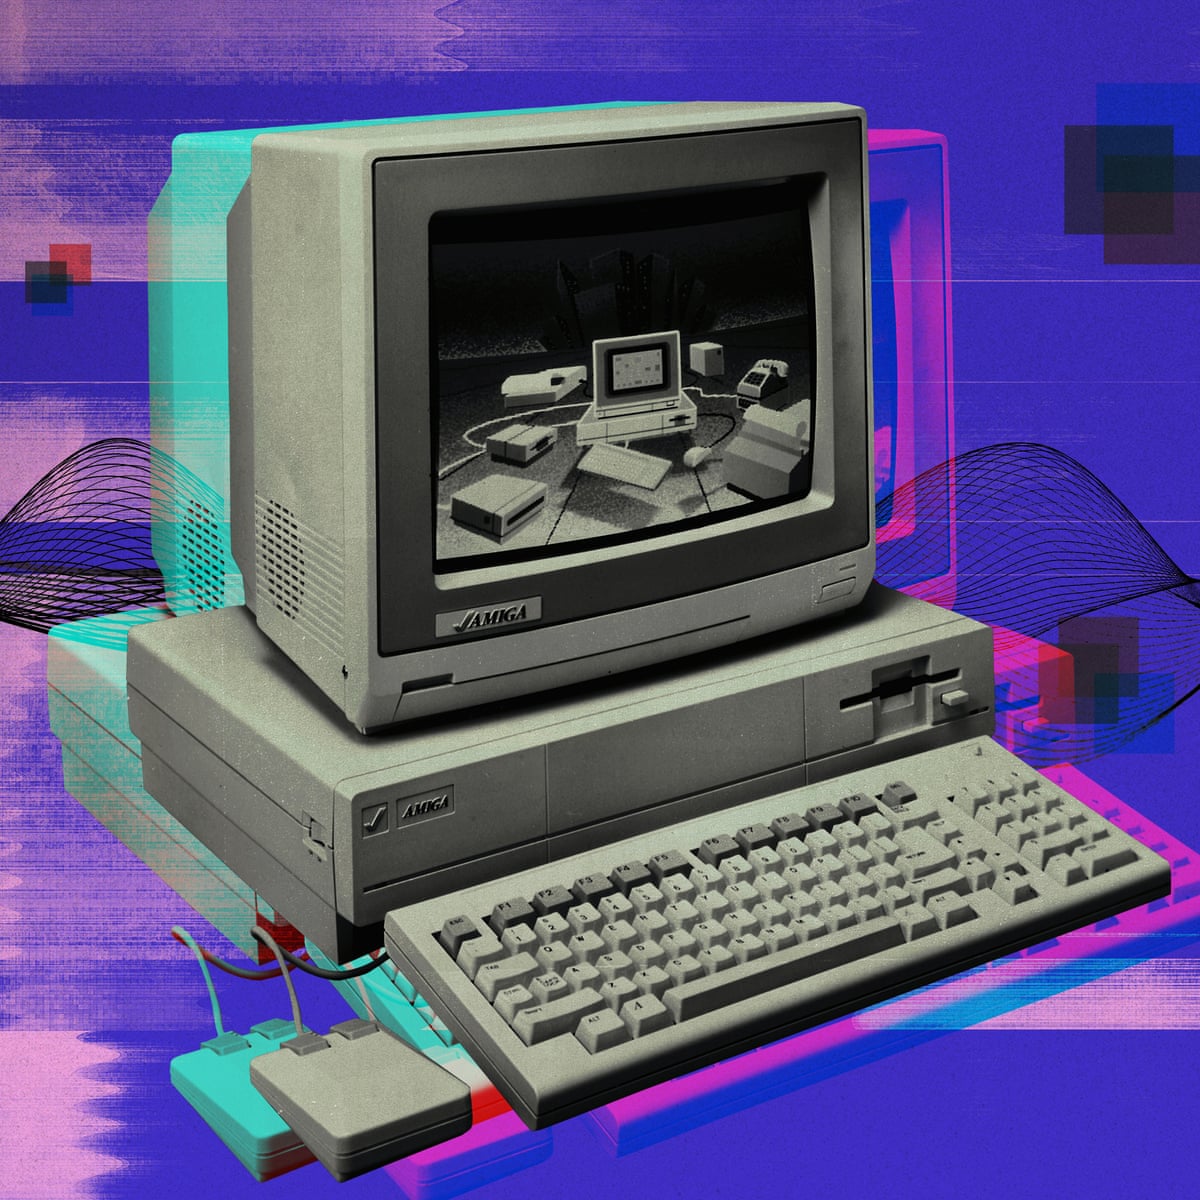 It was the poor man's studio': how Amiga computers reprogrammed